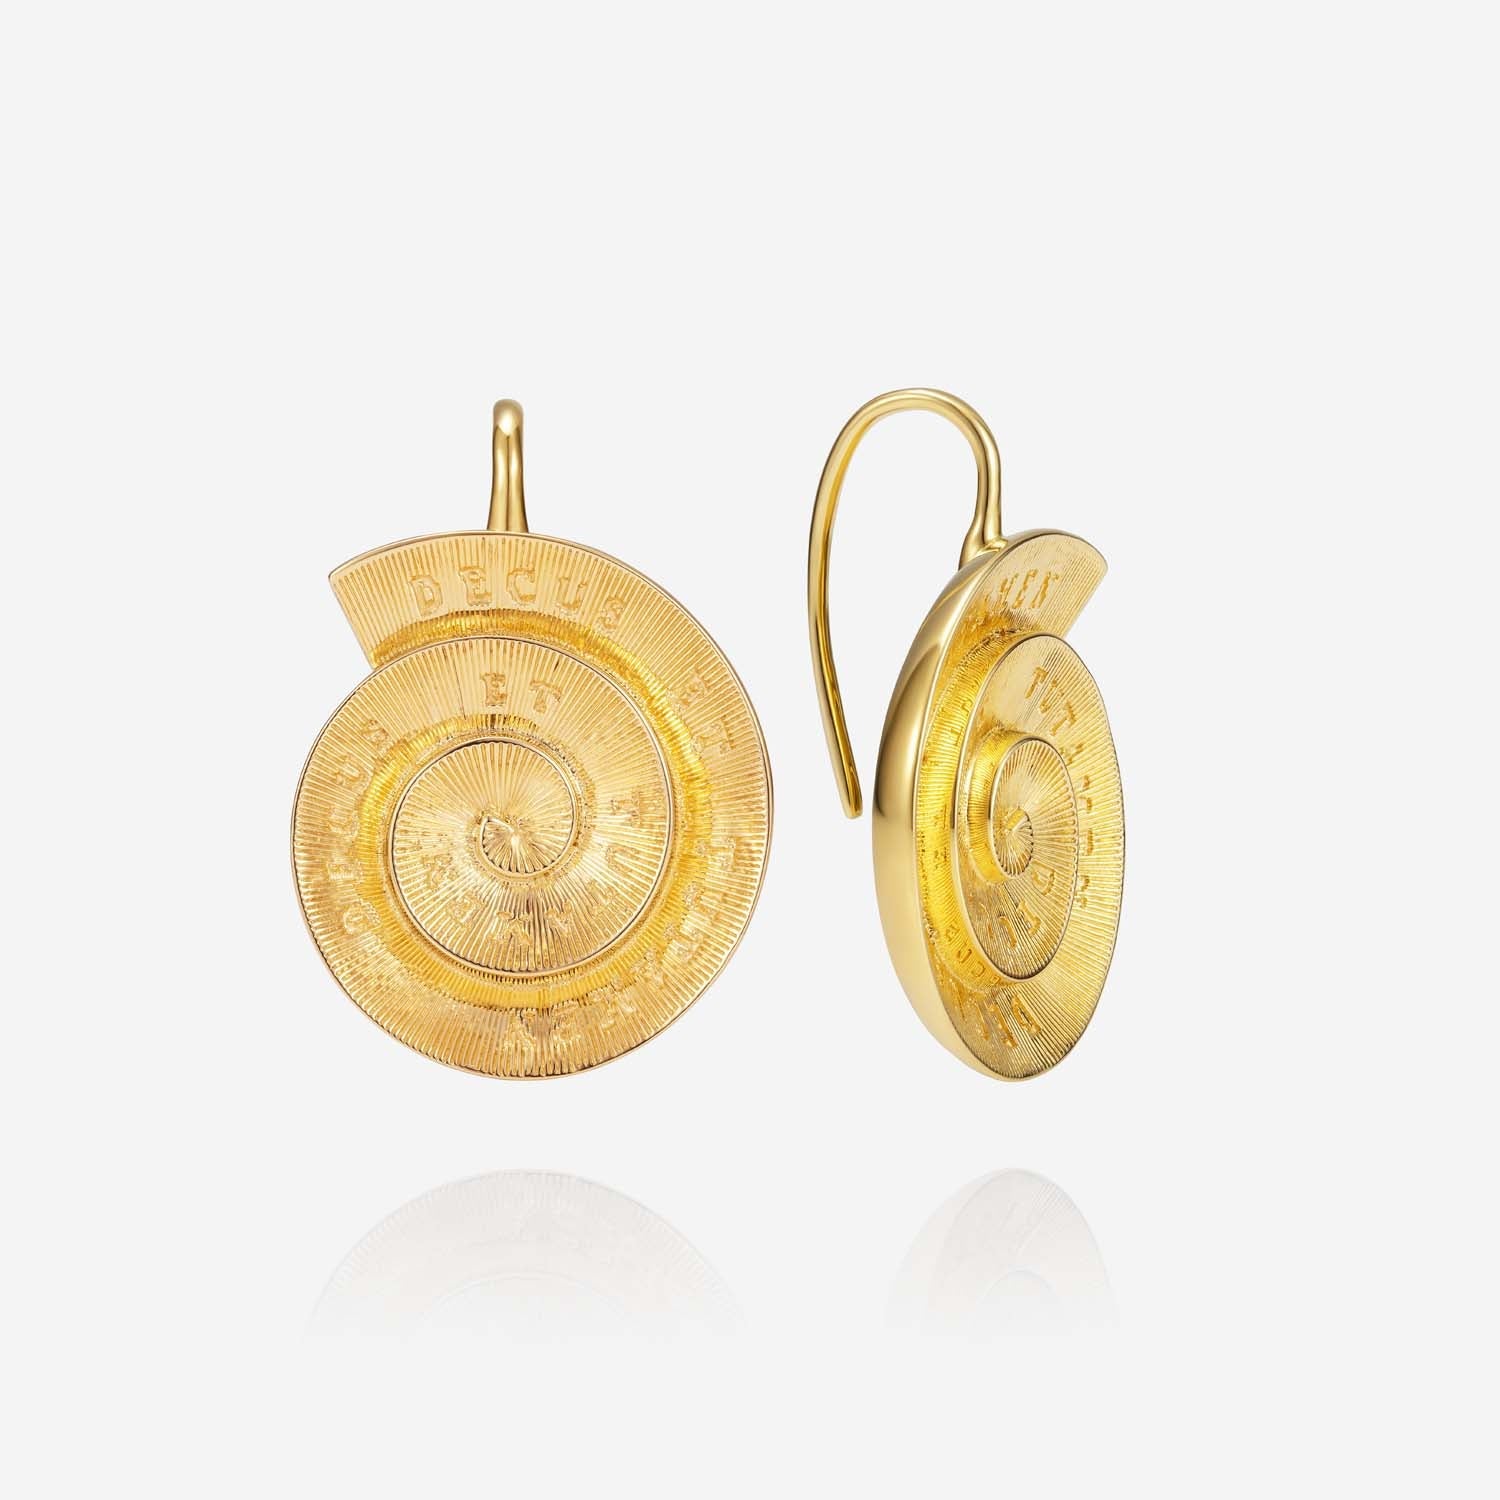 886 Royal Mint Earrings Tutamen Spiral Earrings 18ct Yellow Gold